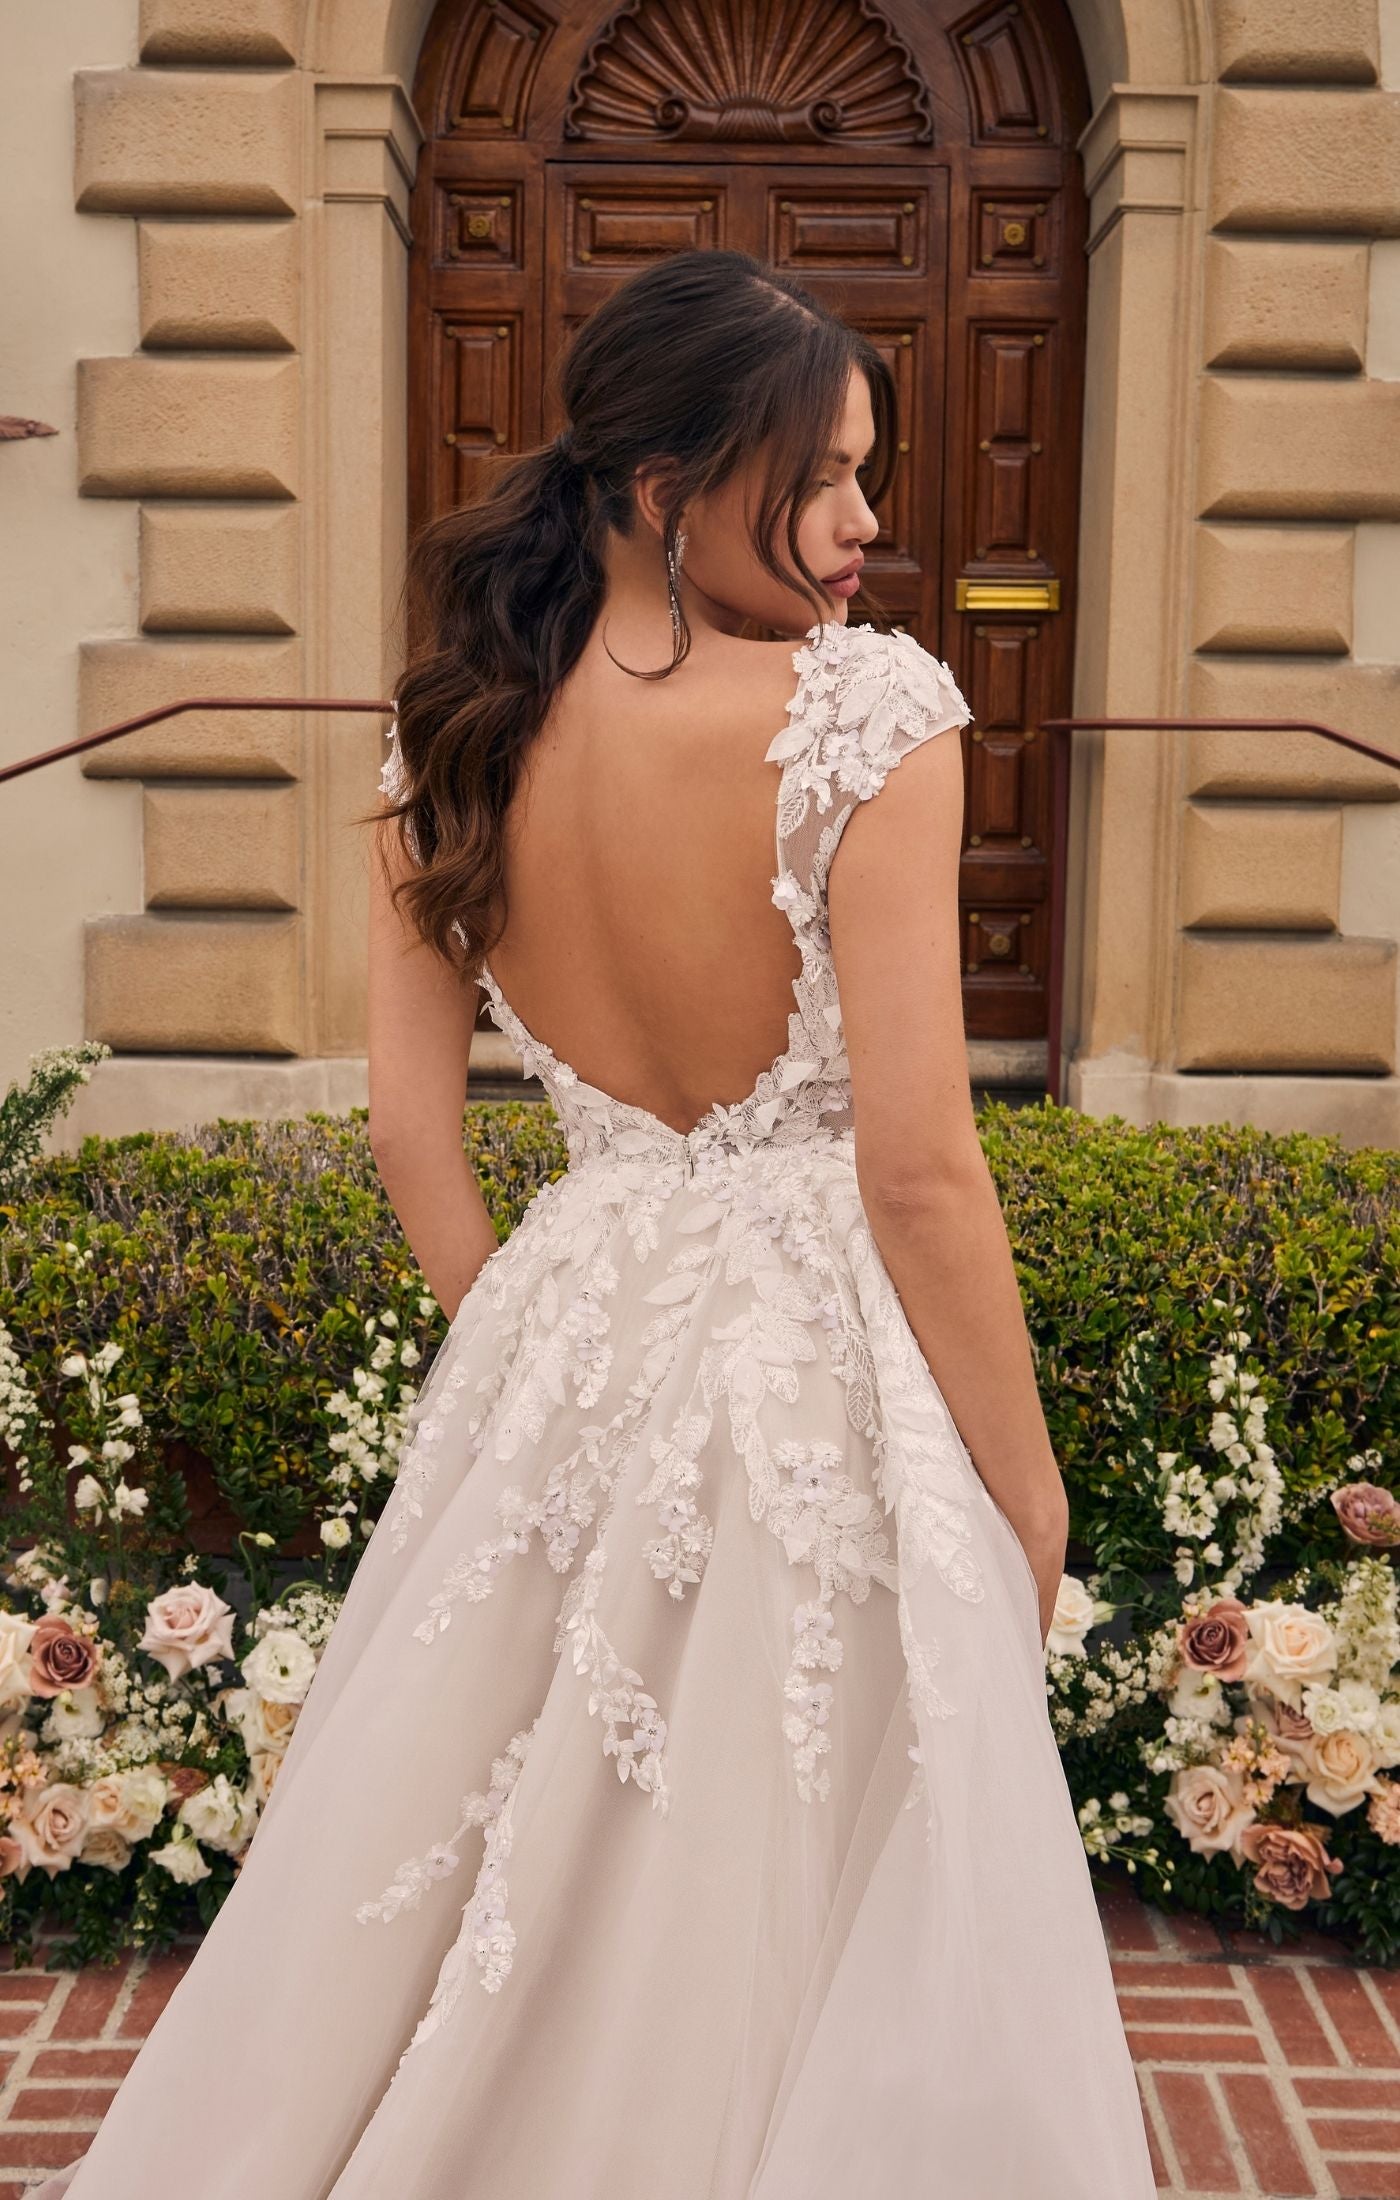 Black lace ballgown wedding dress by Casablanca Bridal ca-decklyn